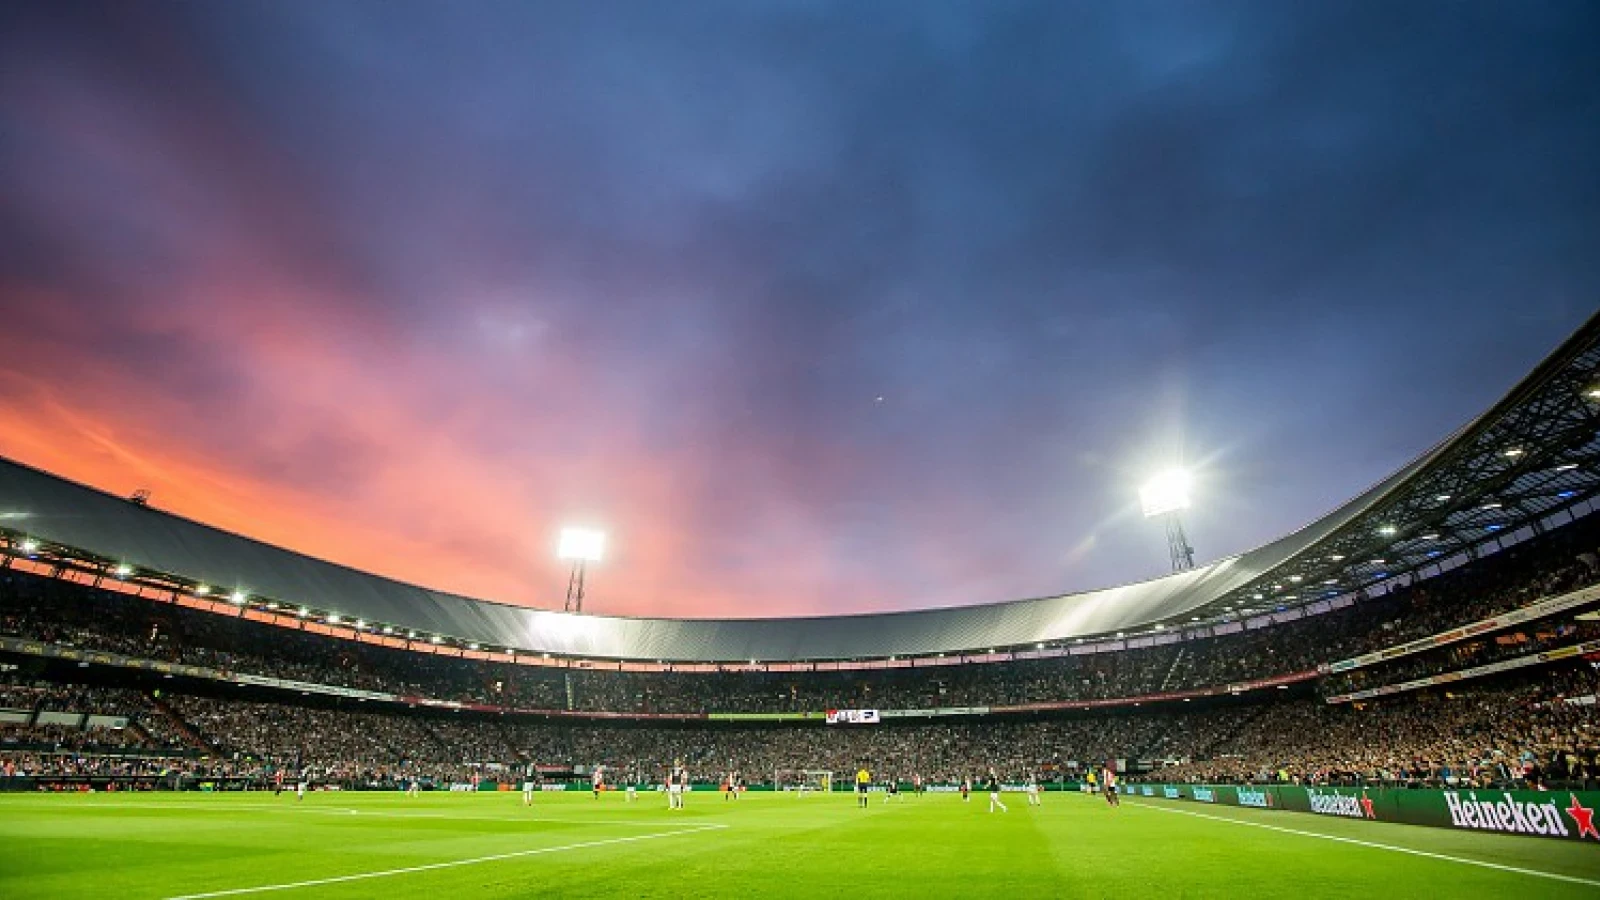 Ingezonden | 'Gudde vindt constructieve gesprekken met Feyenoordsupporters onbelangrijk'